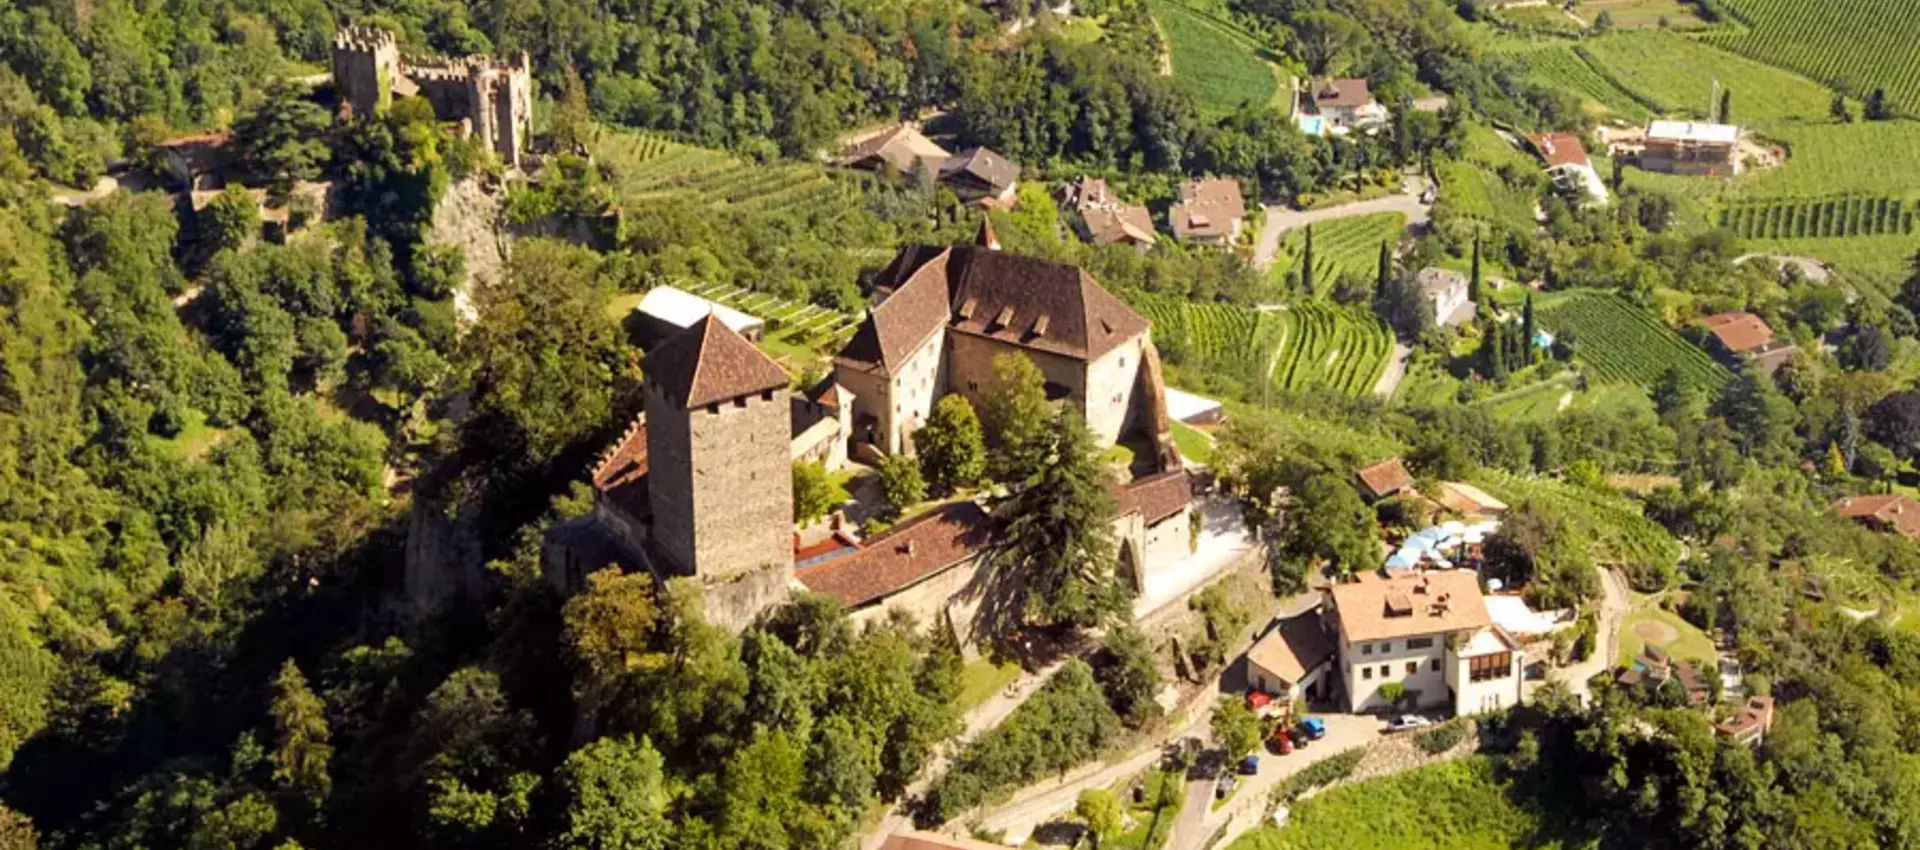 Schloss Tirol in Meran (Südtirol)